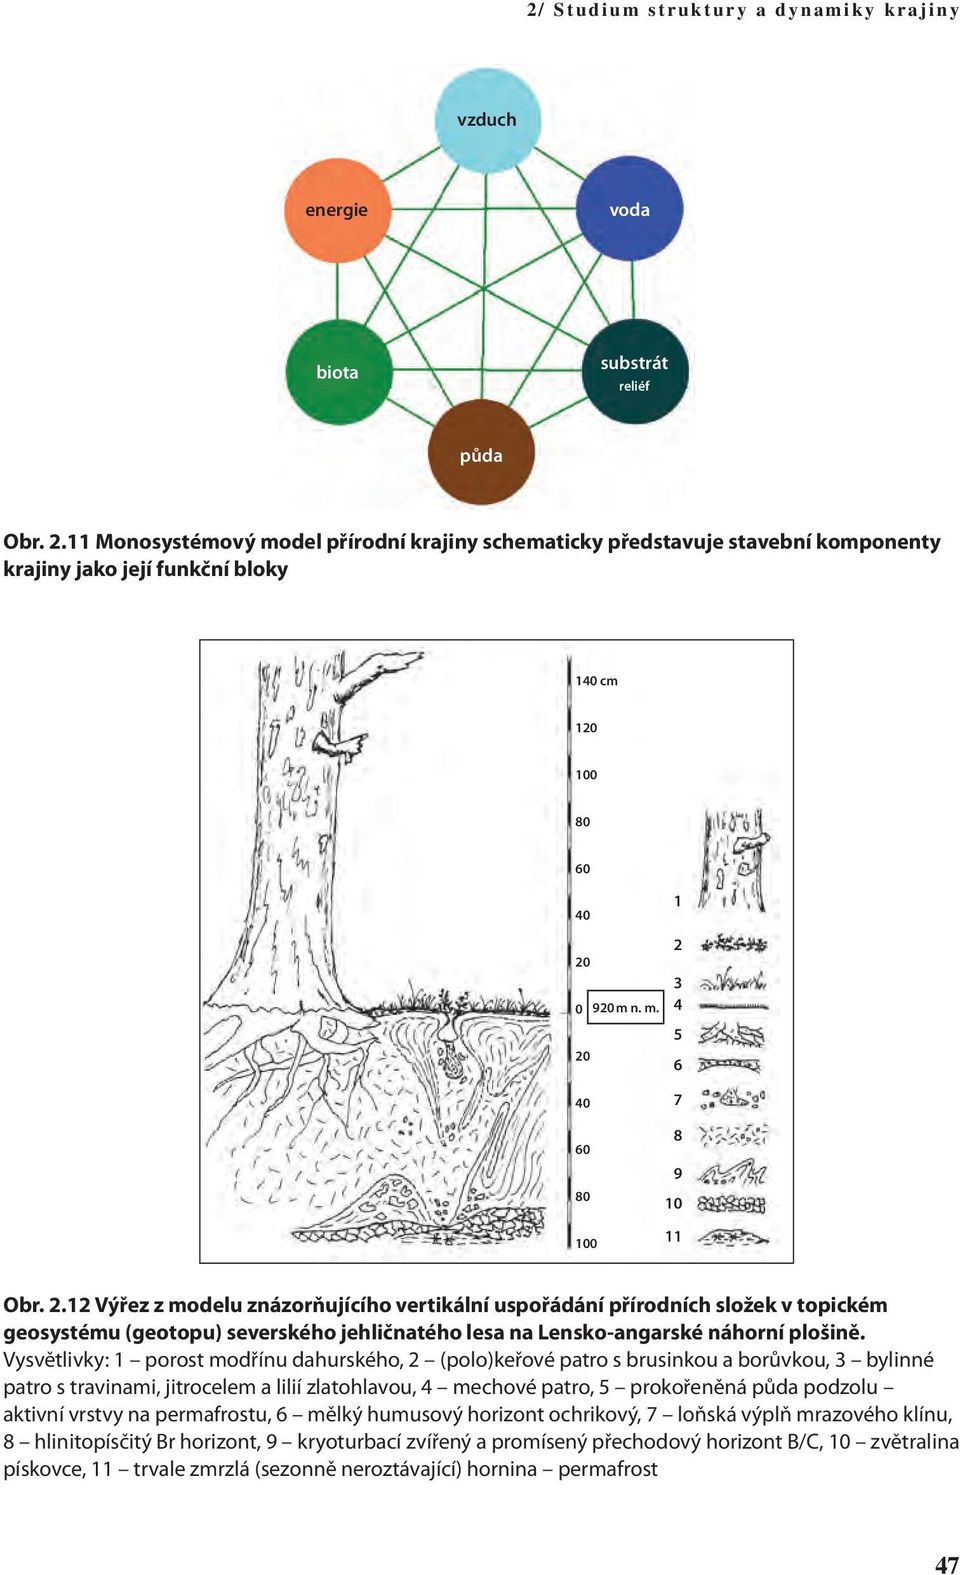 2.12 Výřez z modelu znázorňujícího vertikální uspořádání přírodních složek v topickém geosystému (geotopu) severského jehličnatého lesa na Lensko-angarské náhorní plošině.